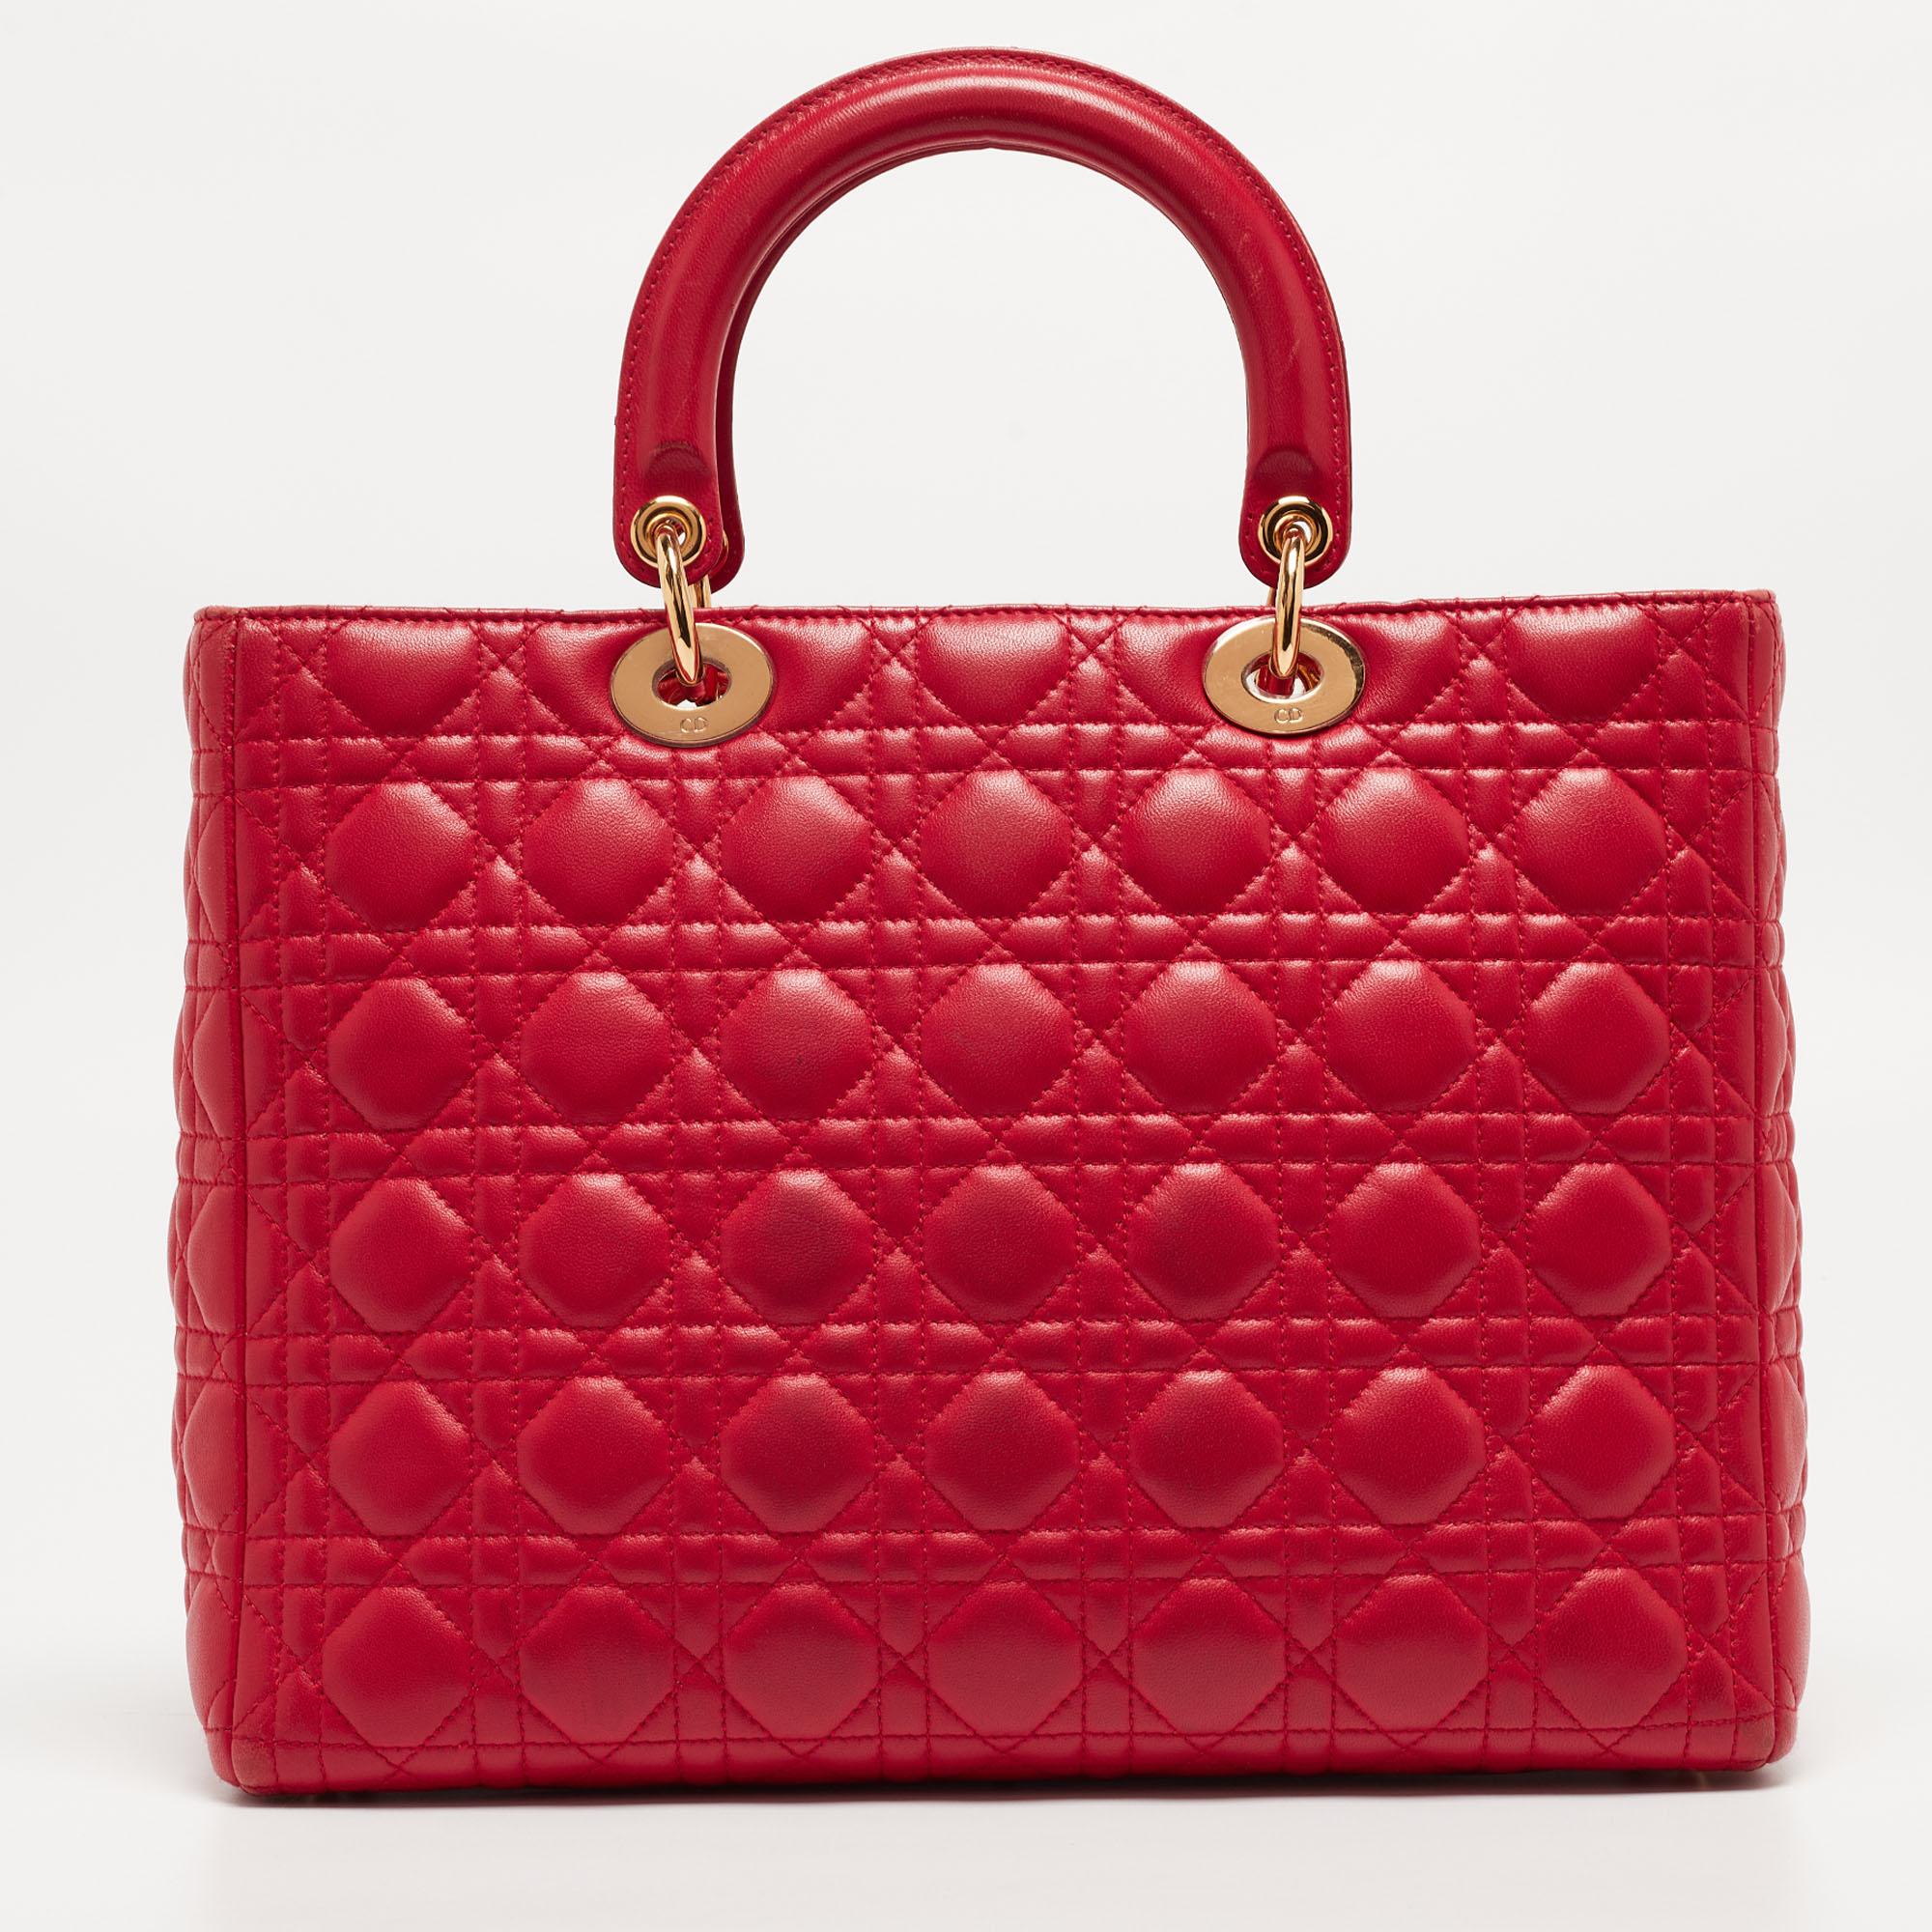 Ein zeitloser Status und ein großartiges Design kennzeichnen die Lady Dior-Tasche. Es ist eine ikonische Tasche, in die die Menschen bis heute investieren. Wir haben hier diese klassische Schönheit aus rotem Cannage-Leder. Die Tasche ist mit